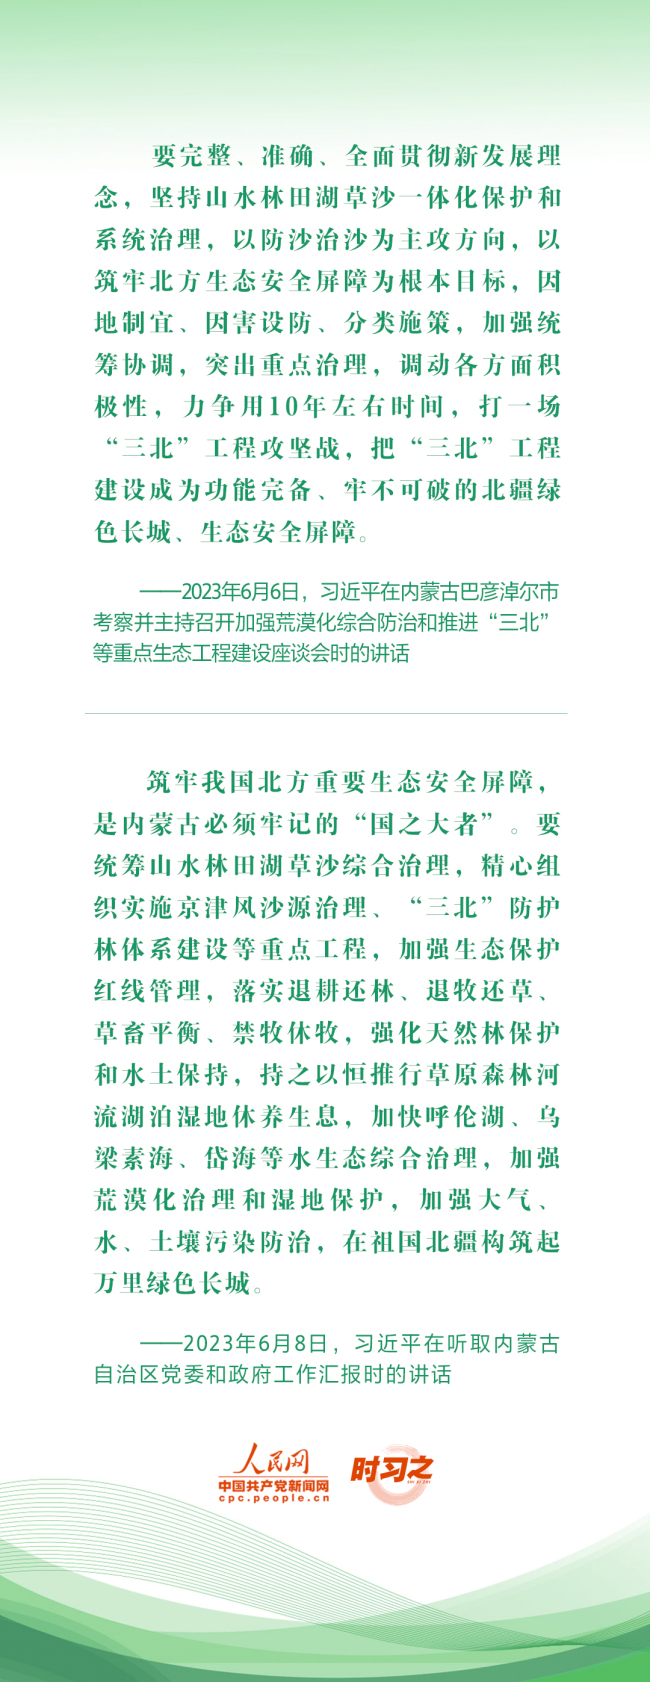 2023年中策划·谱写中国式现代化建设新篇章 绿水青山映初心 总书记心系“绿色中国”